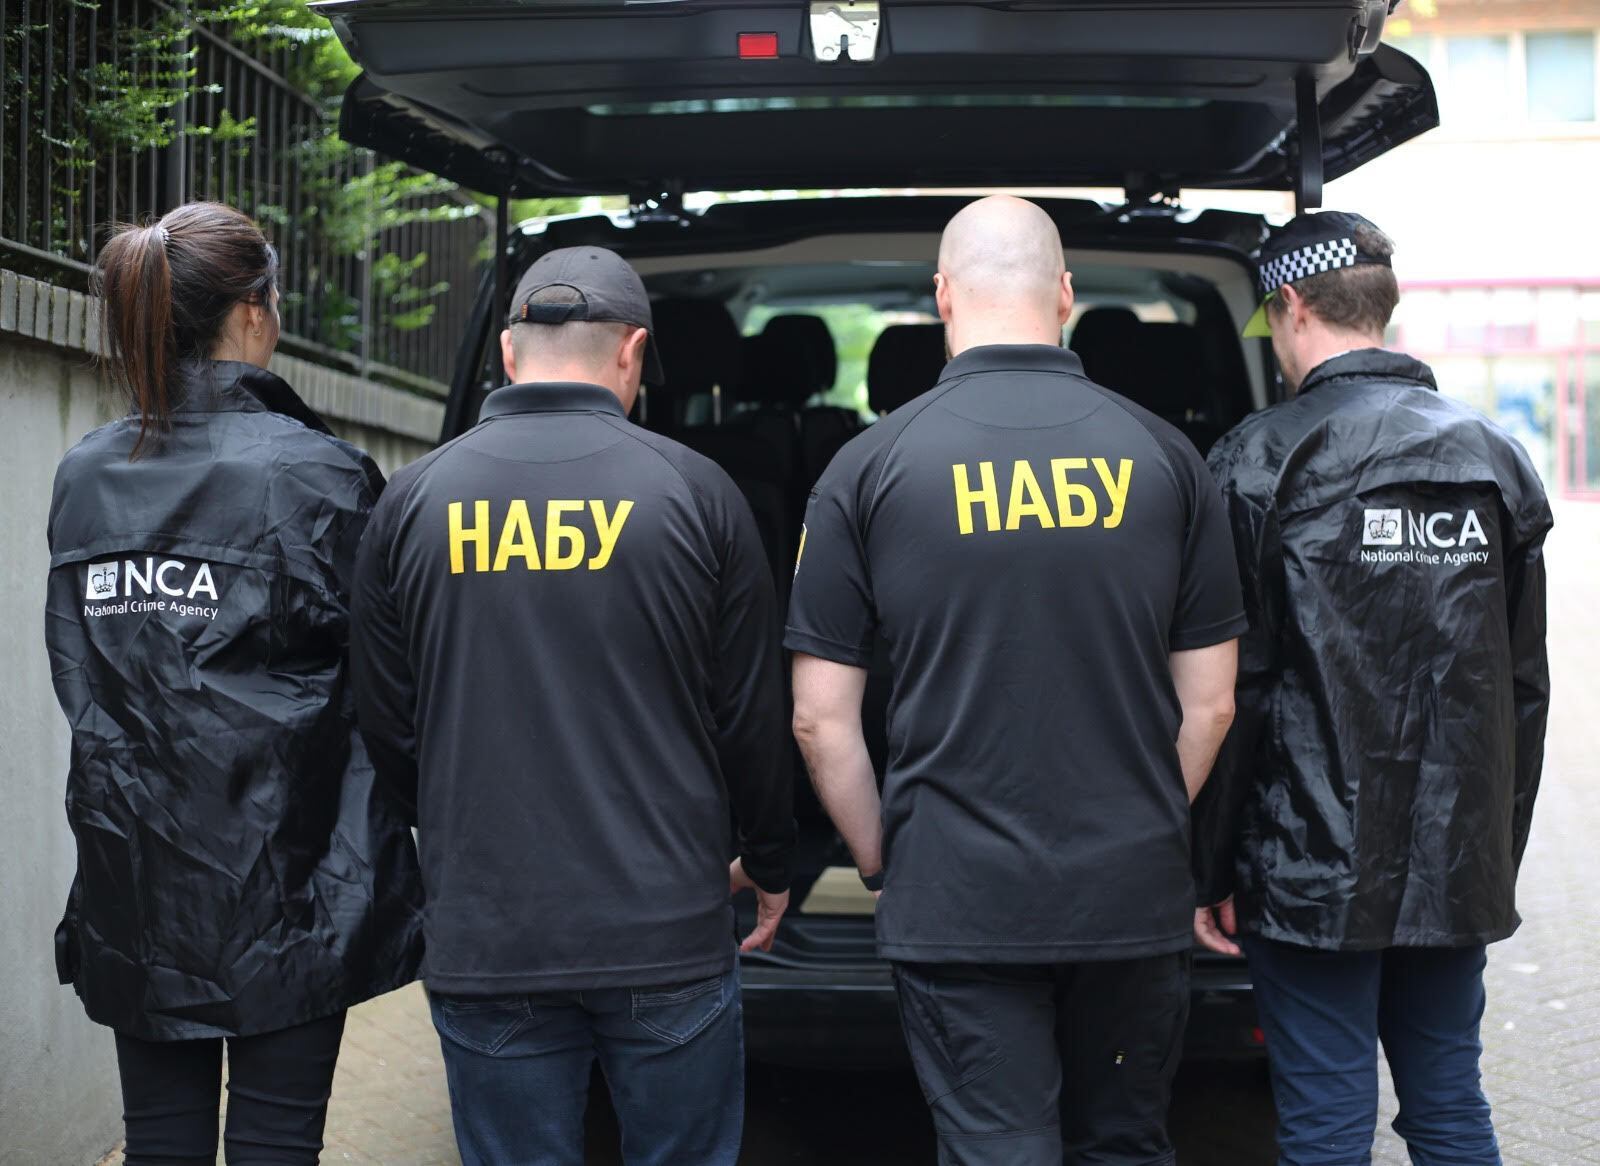 В Лондоне британские и украинские следователи получили доказательства против преступной организации из Одессы. Фото